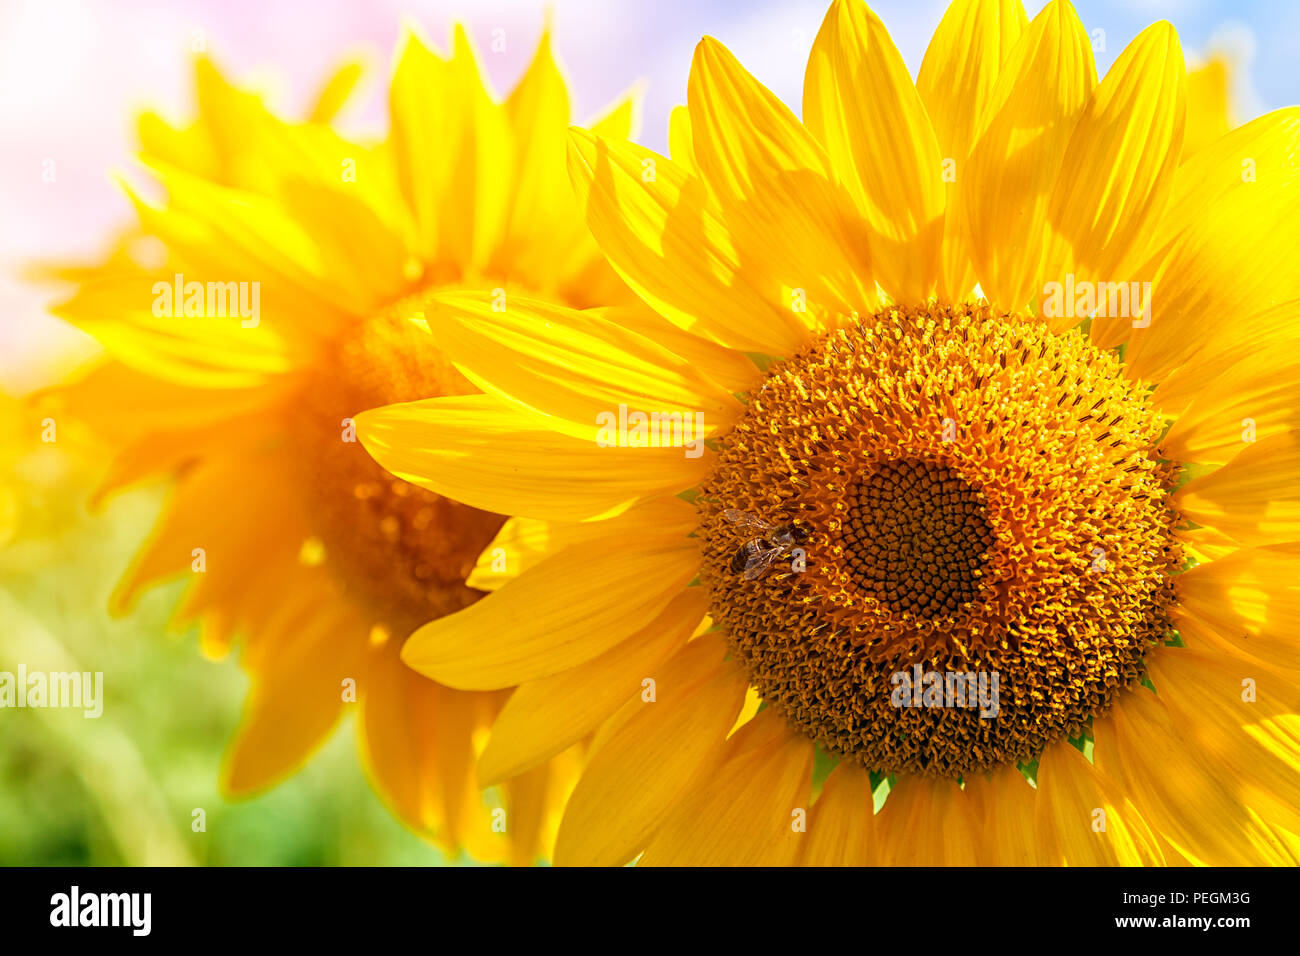 Un close-up di un giovane luminoso giallo girasole su un campo di semi di girasole in un giorno caldo e soleggiato, lo sfondo è sfocato, un noob blu Foto Stock